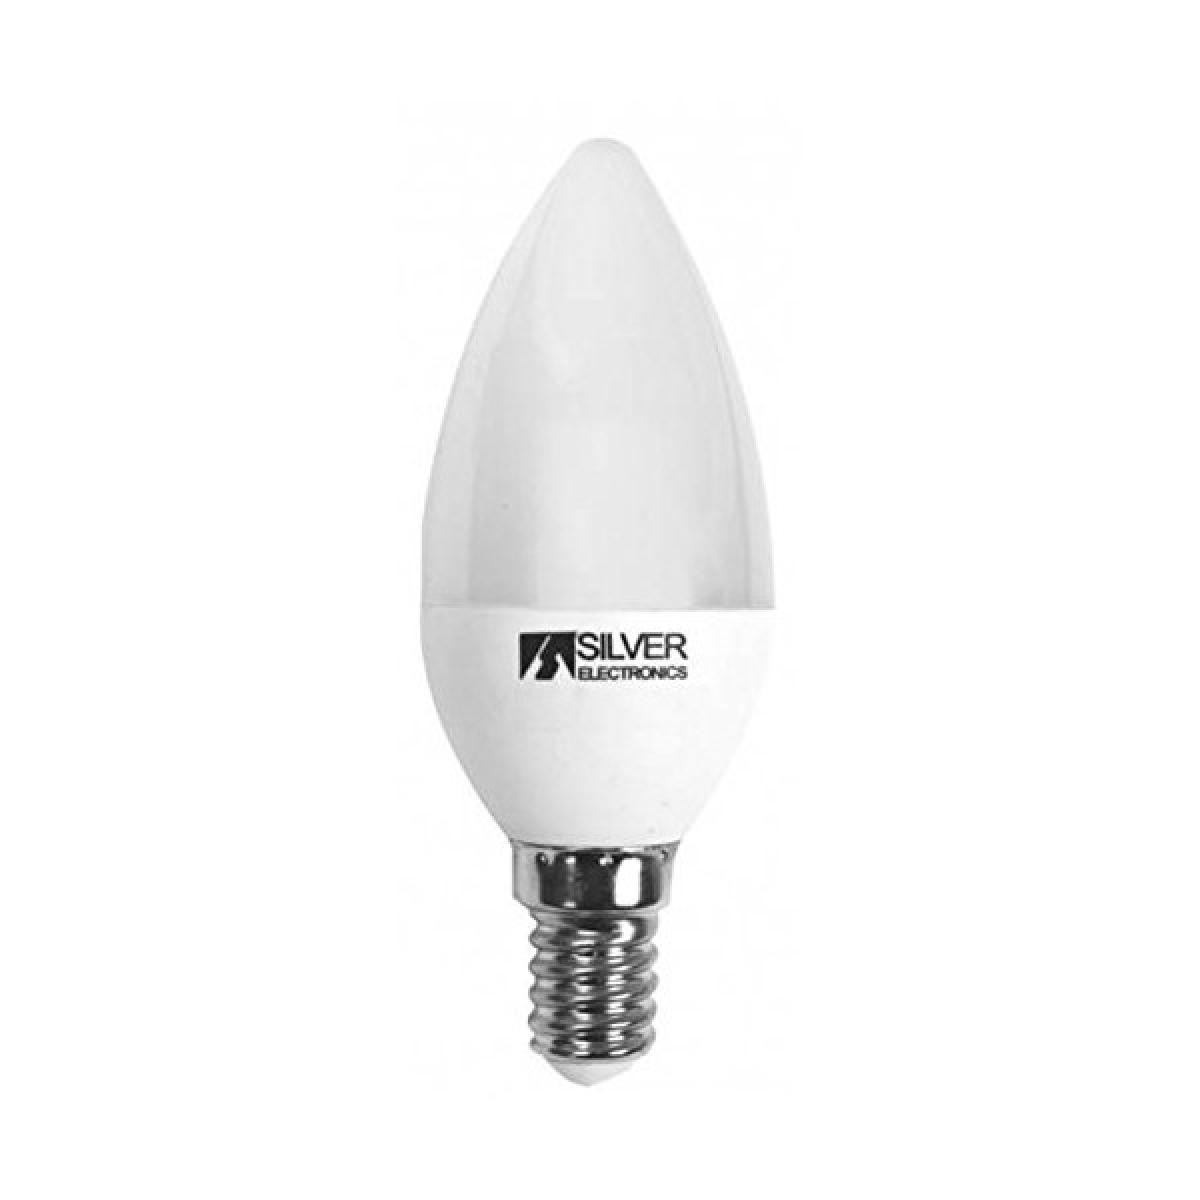 Totalcadeau - Ampoule LED Bougie E14 7W Lumière chaude - Ampoule pour lampe Choisissez votre option - 5000K pas cher - Ampoules LED